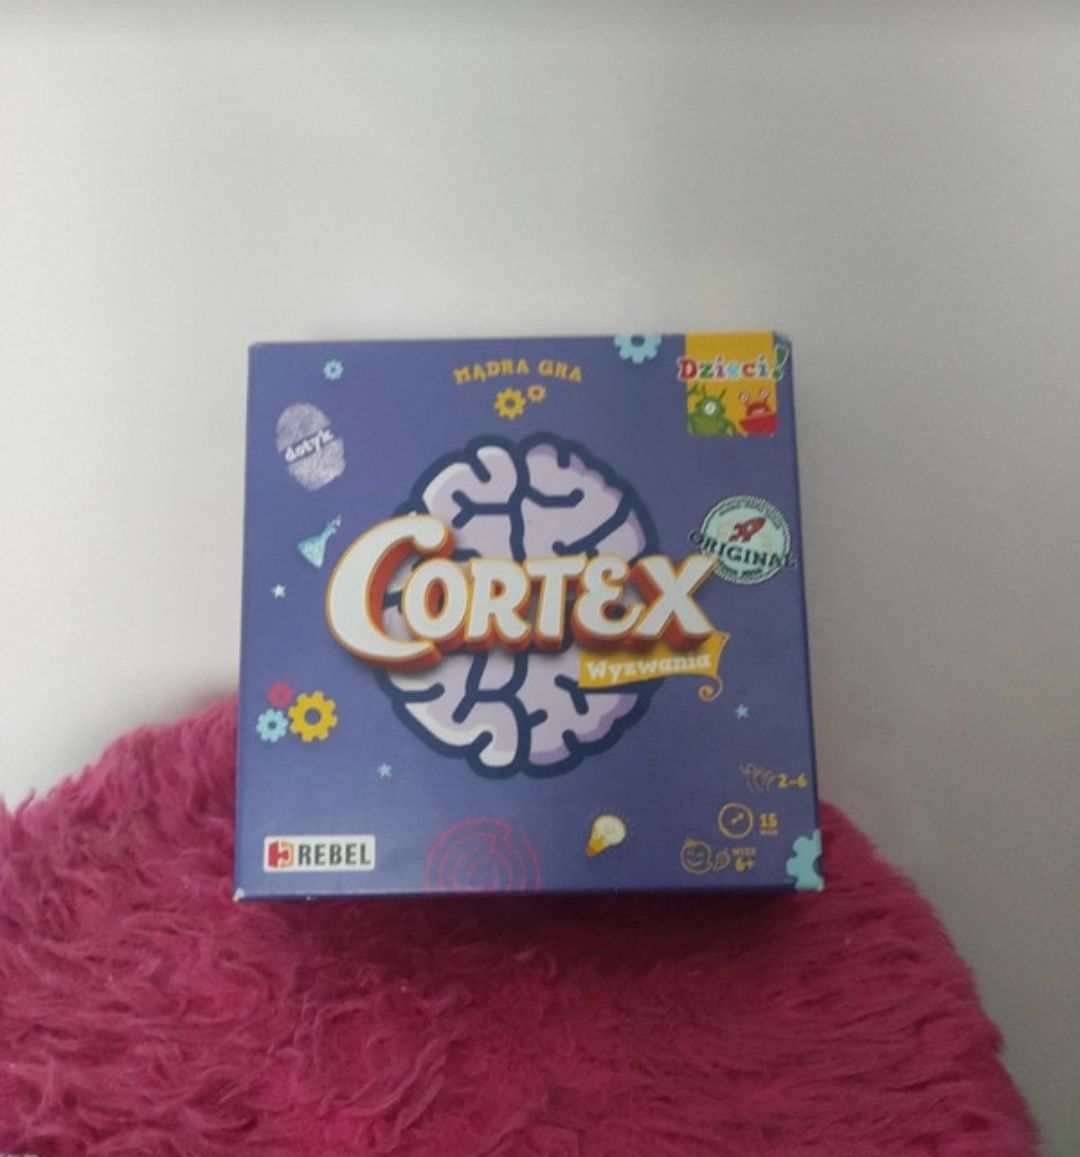 Cortex: wyzwania - gra logiczna